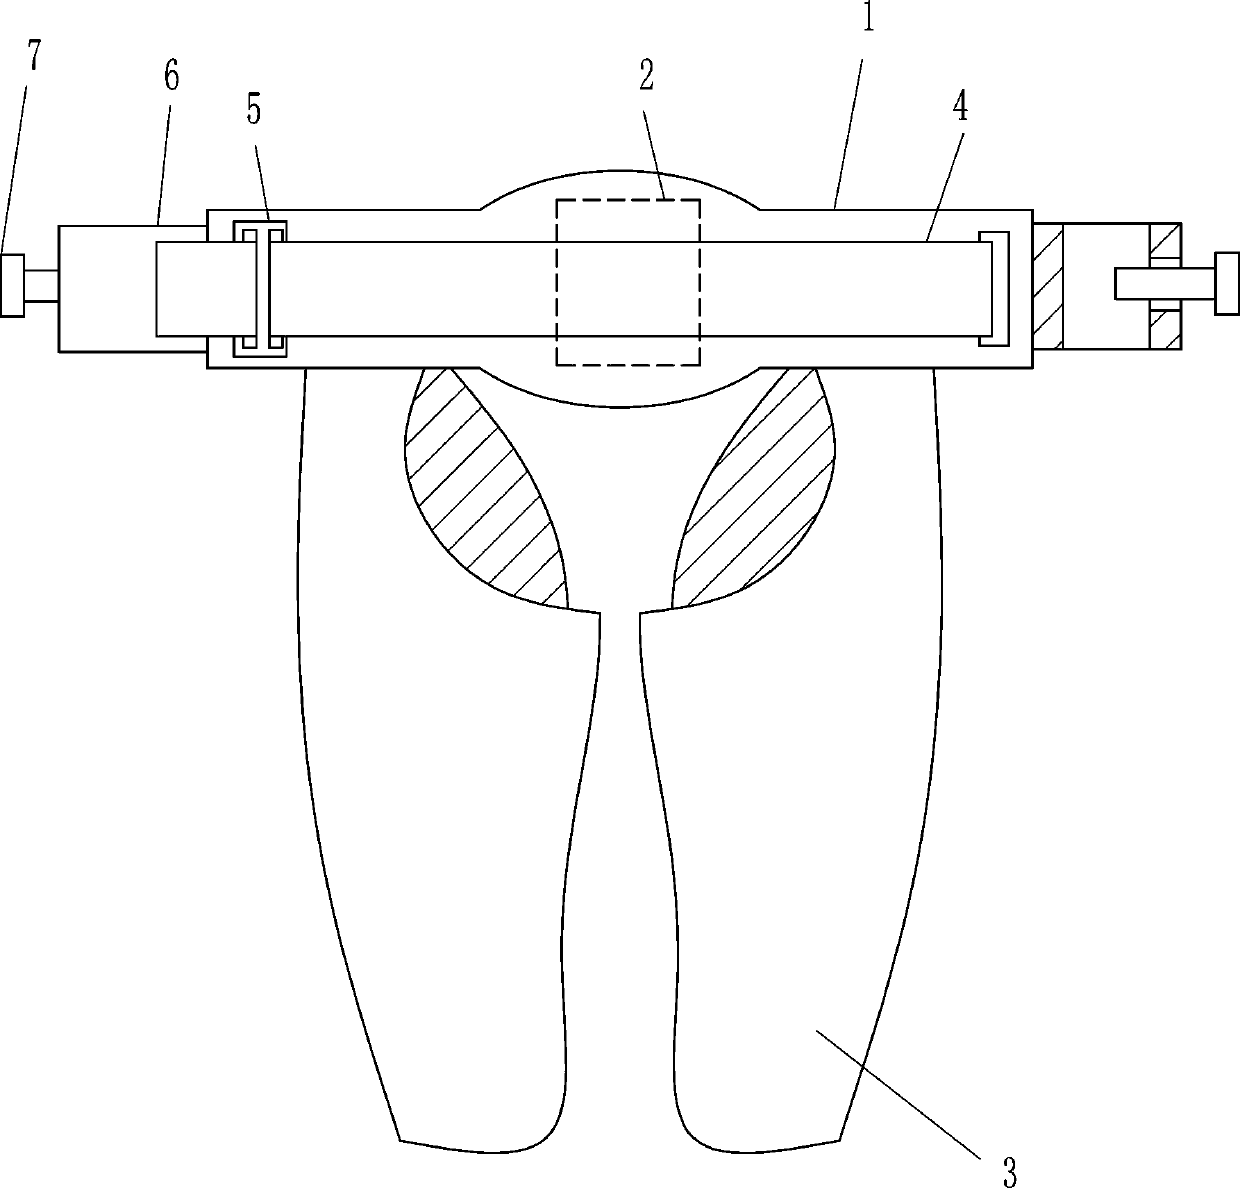 A wearable deltoid muscle training device